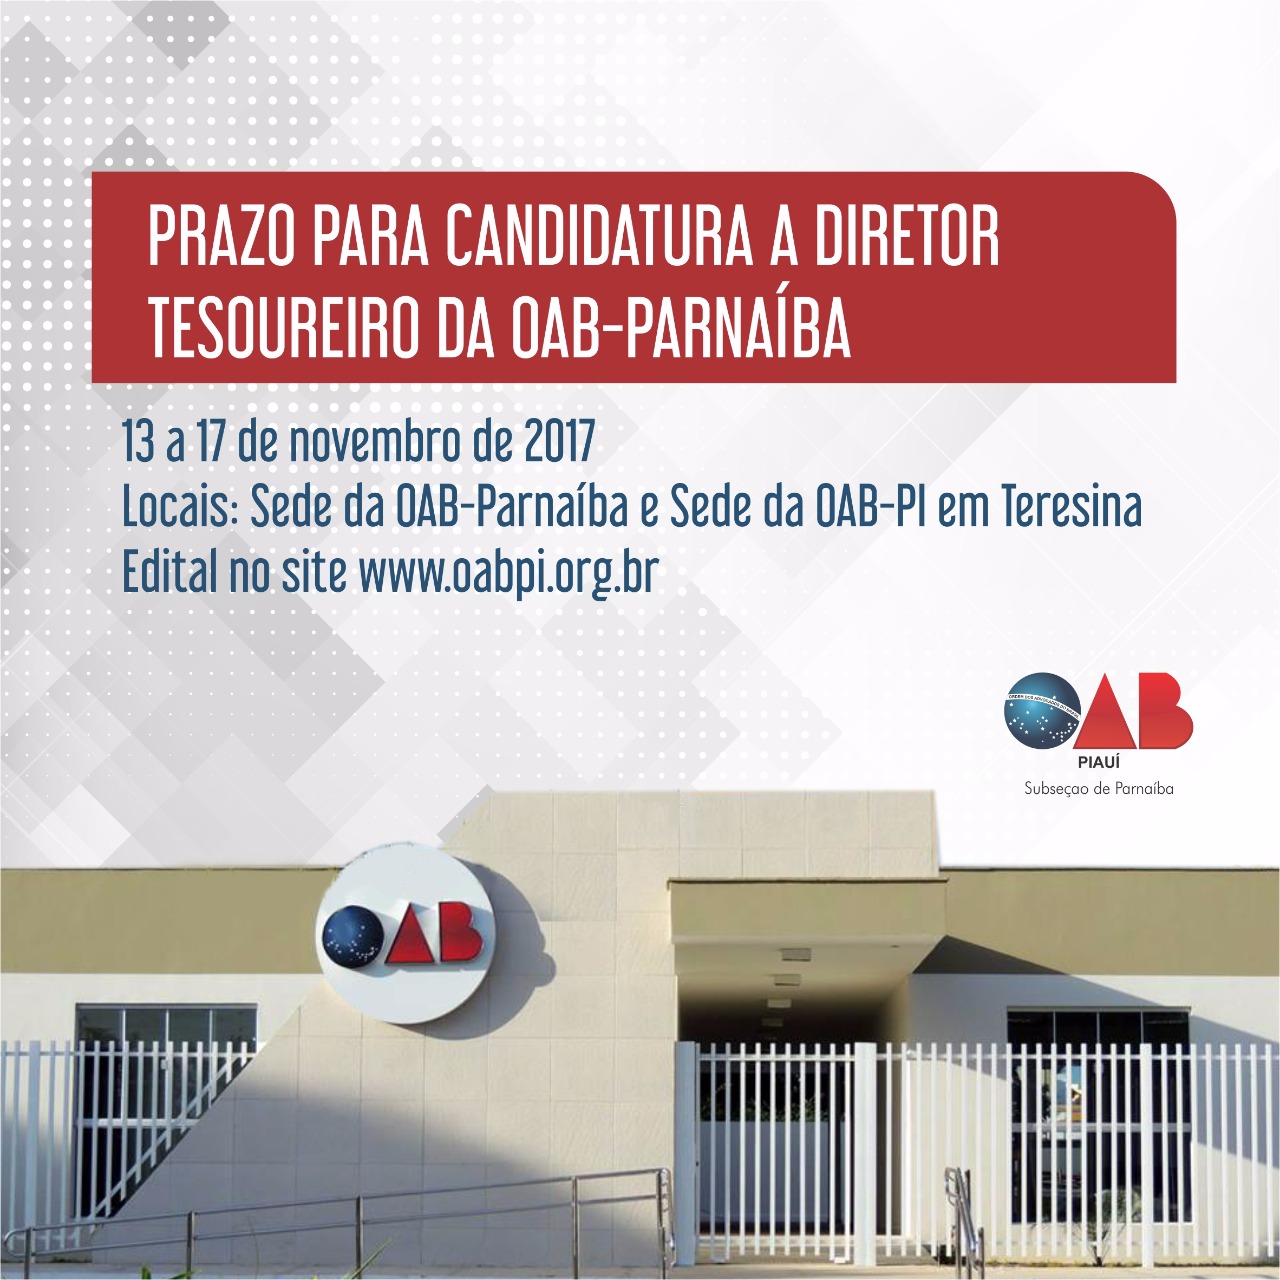 Informativo sobre a eleição para Diretor Tesoureiro da OAB-Parnaíba